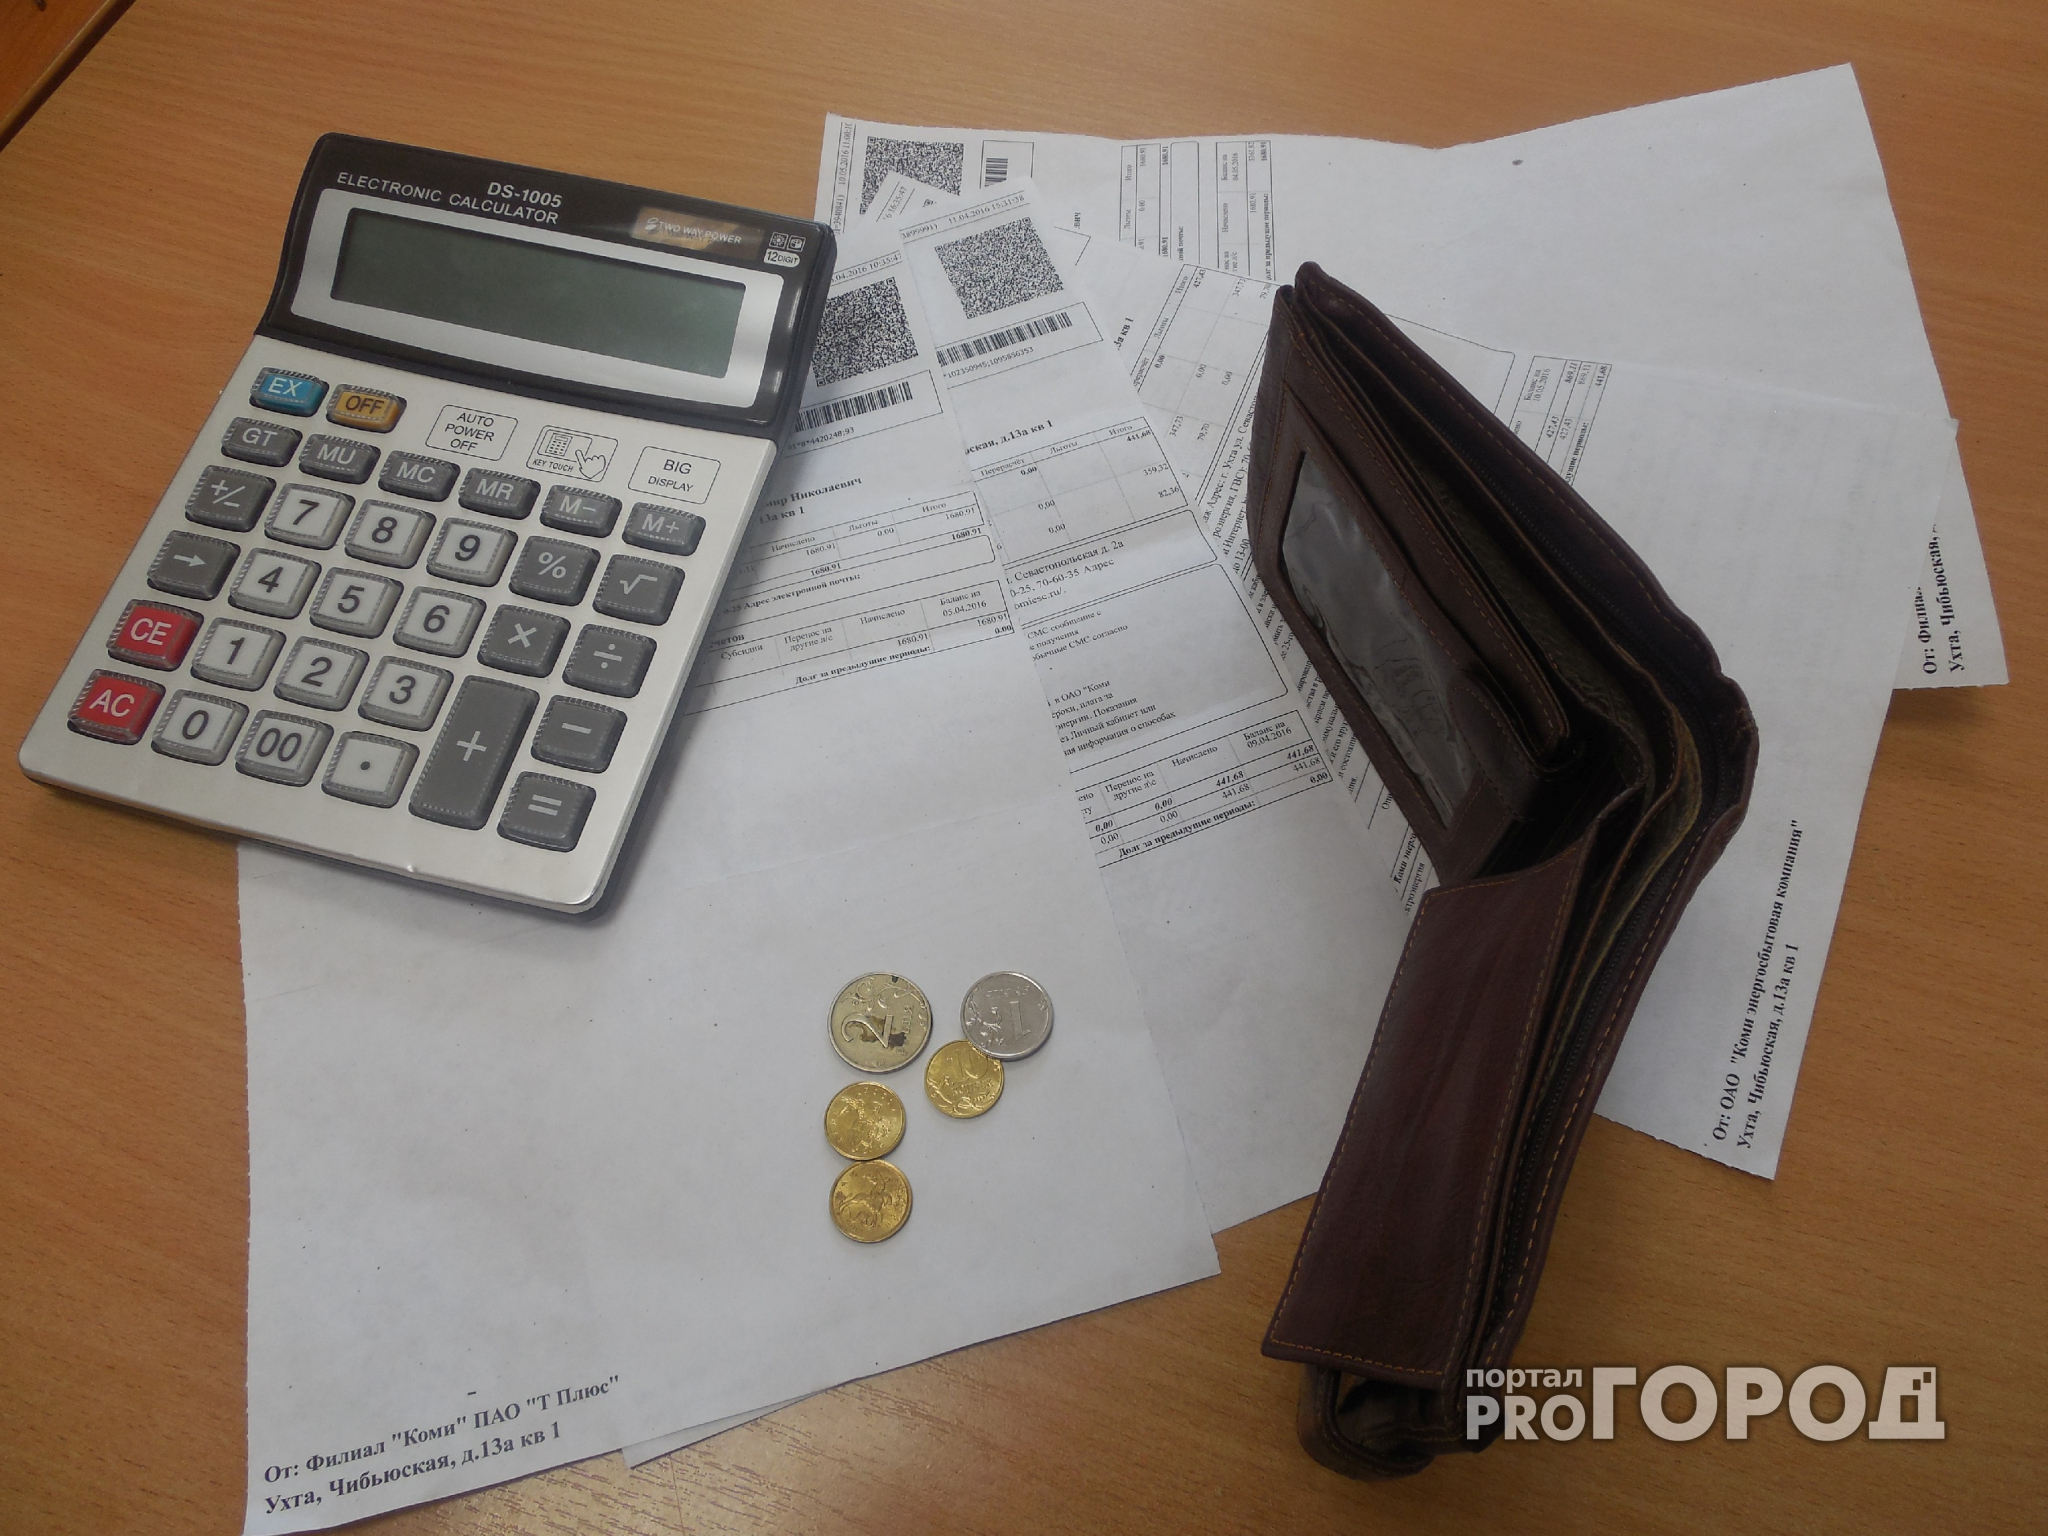 Ярославцам после каникул предложили заплатить за ЖКХ в два раза больше